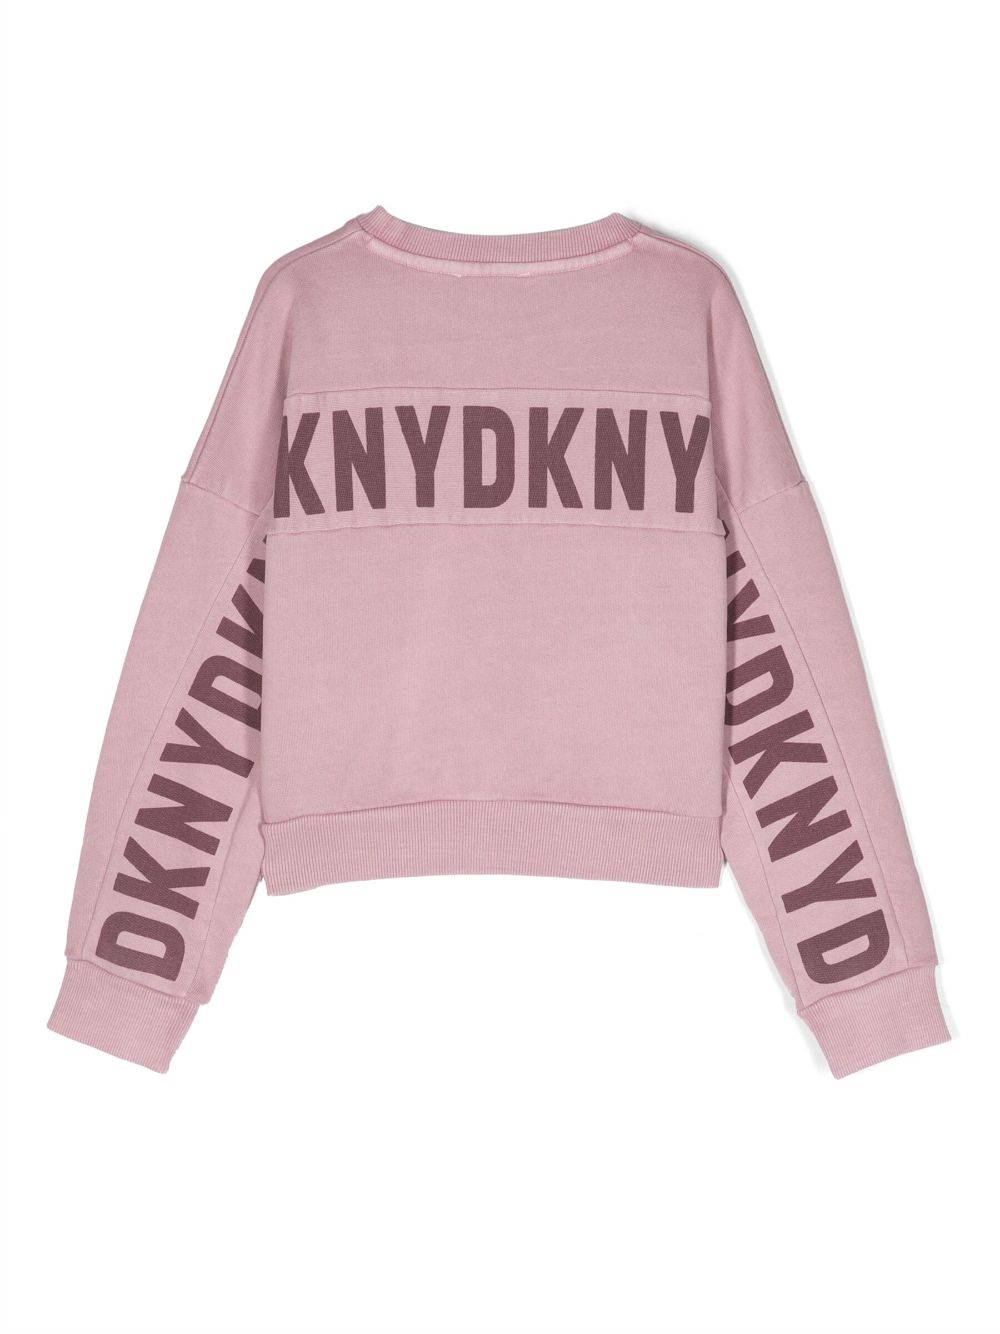 Dkny Kids sweatshirt with logo